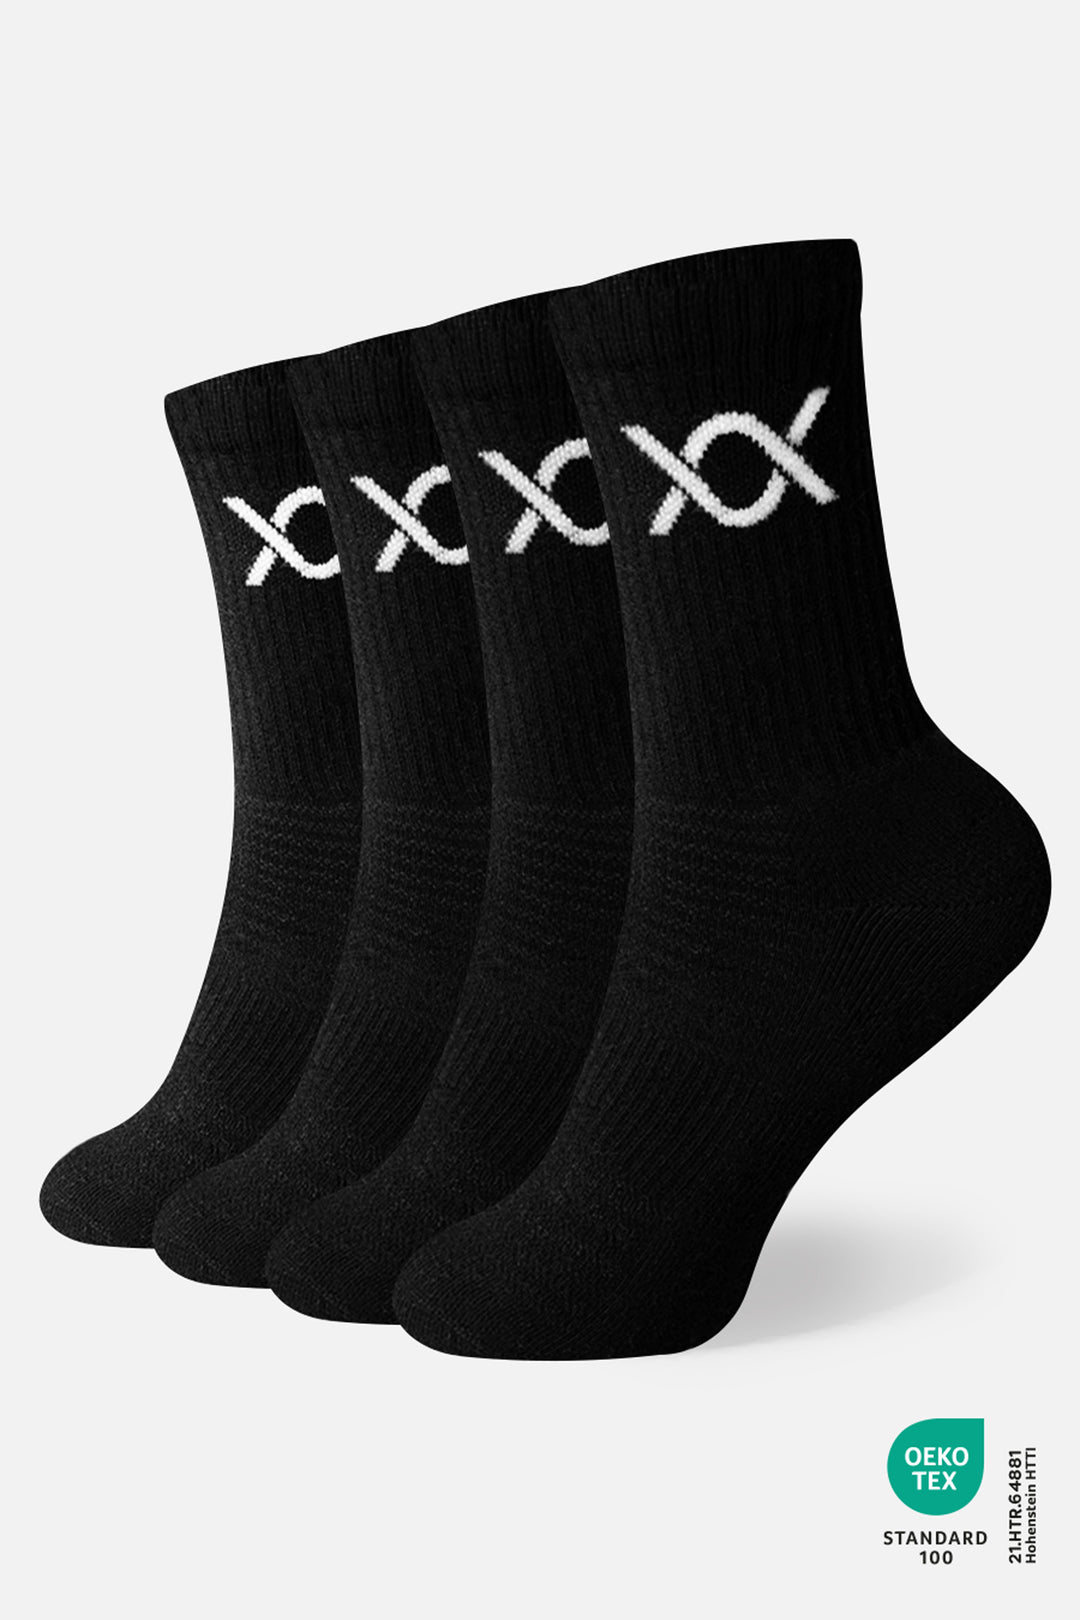 DIXXSON Crew Tennis Socken - 6er Pack - schwarz -  Unisex für Damen und Herren - Bio-Baumwolle 